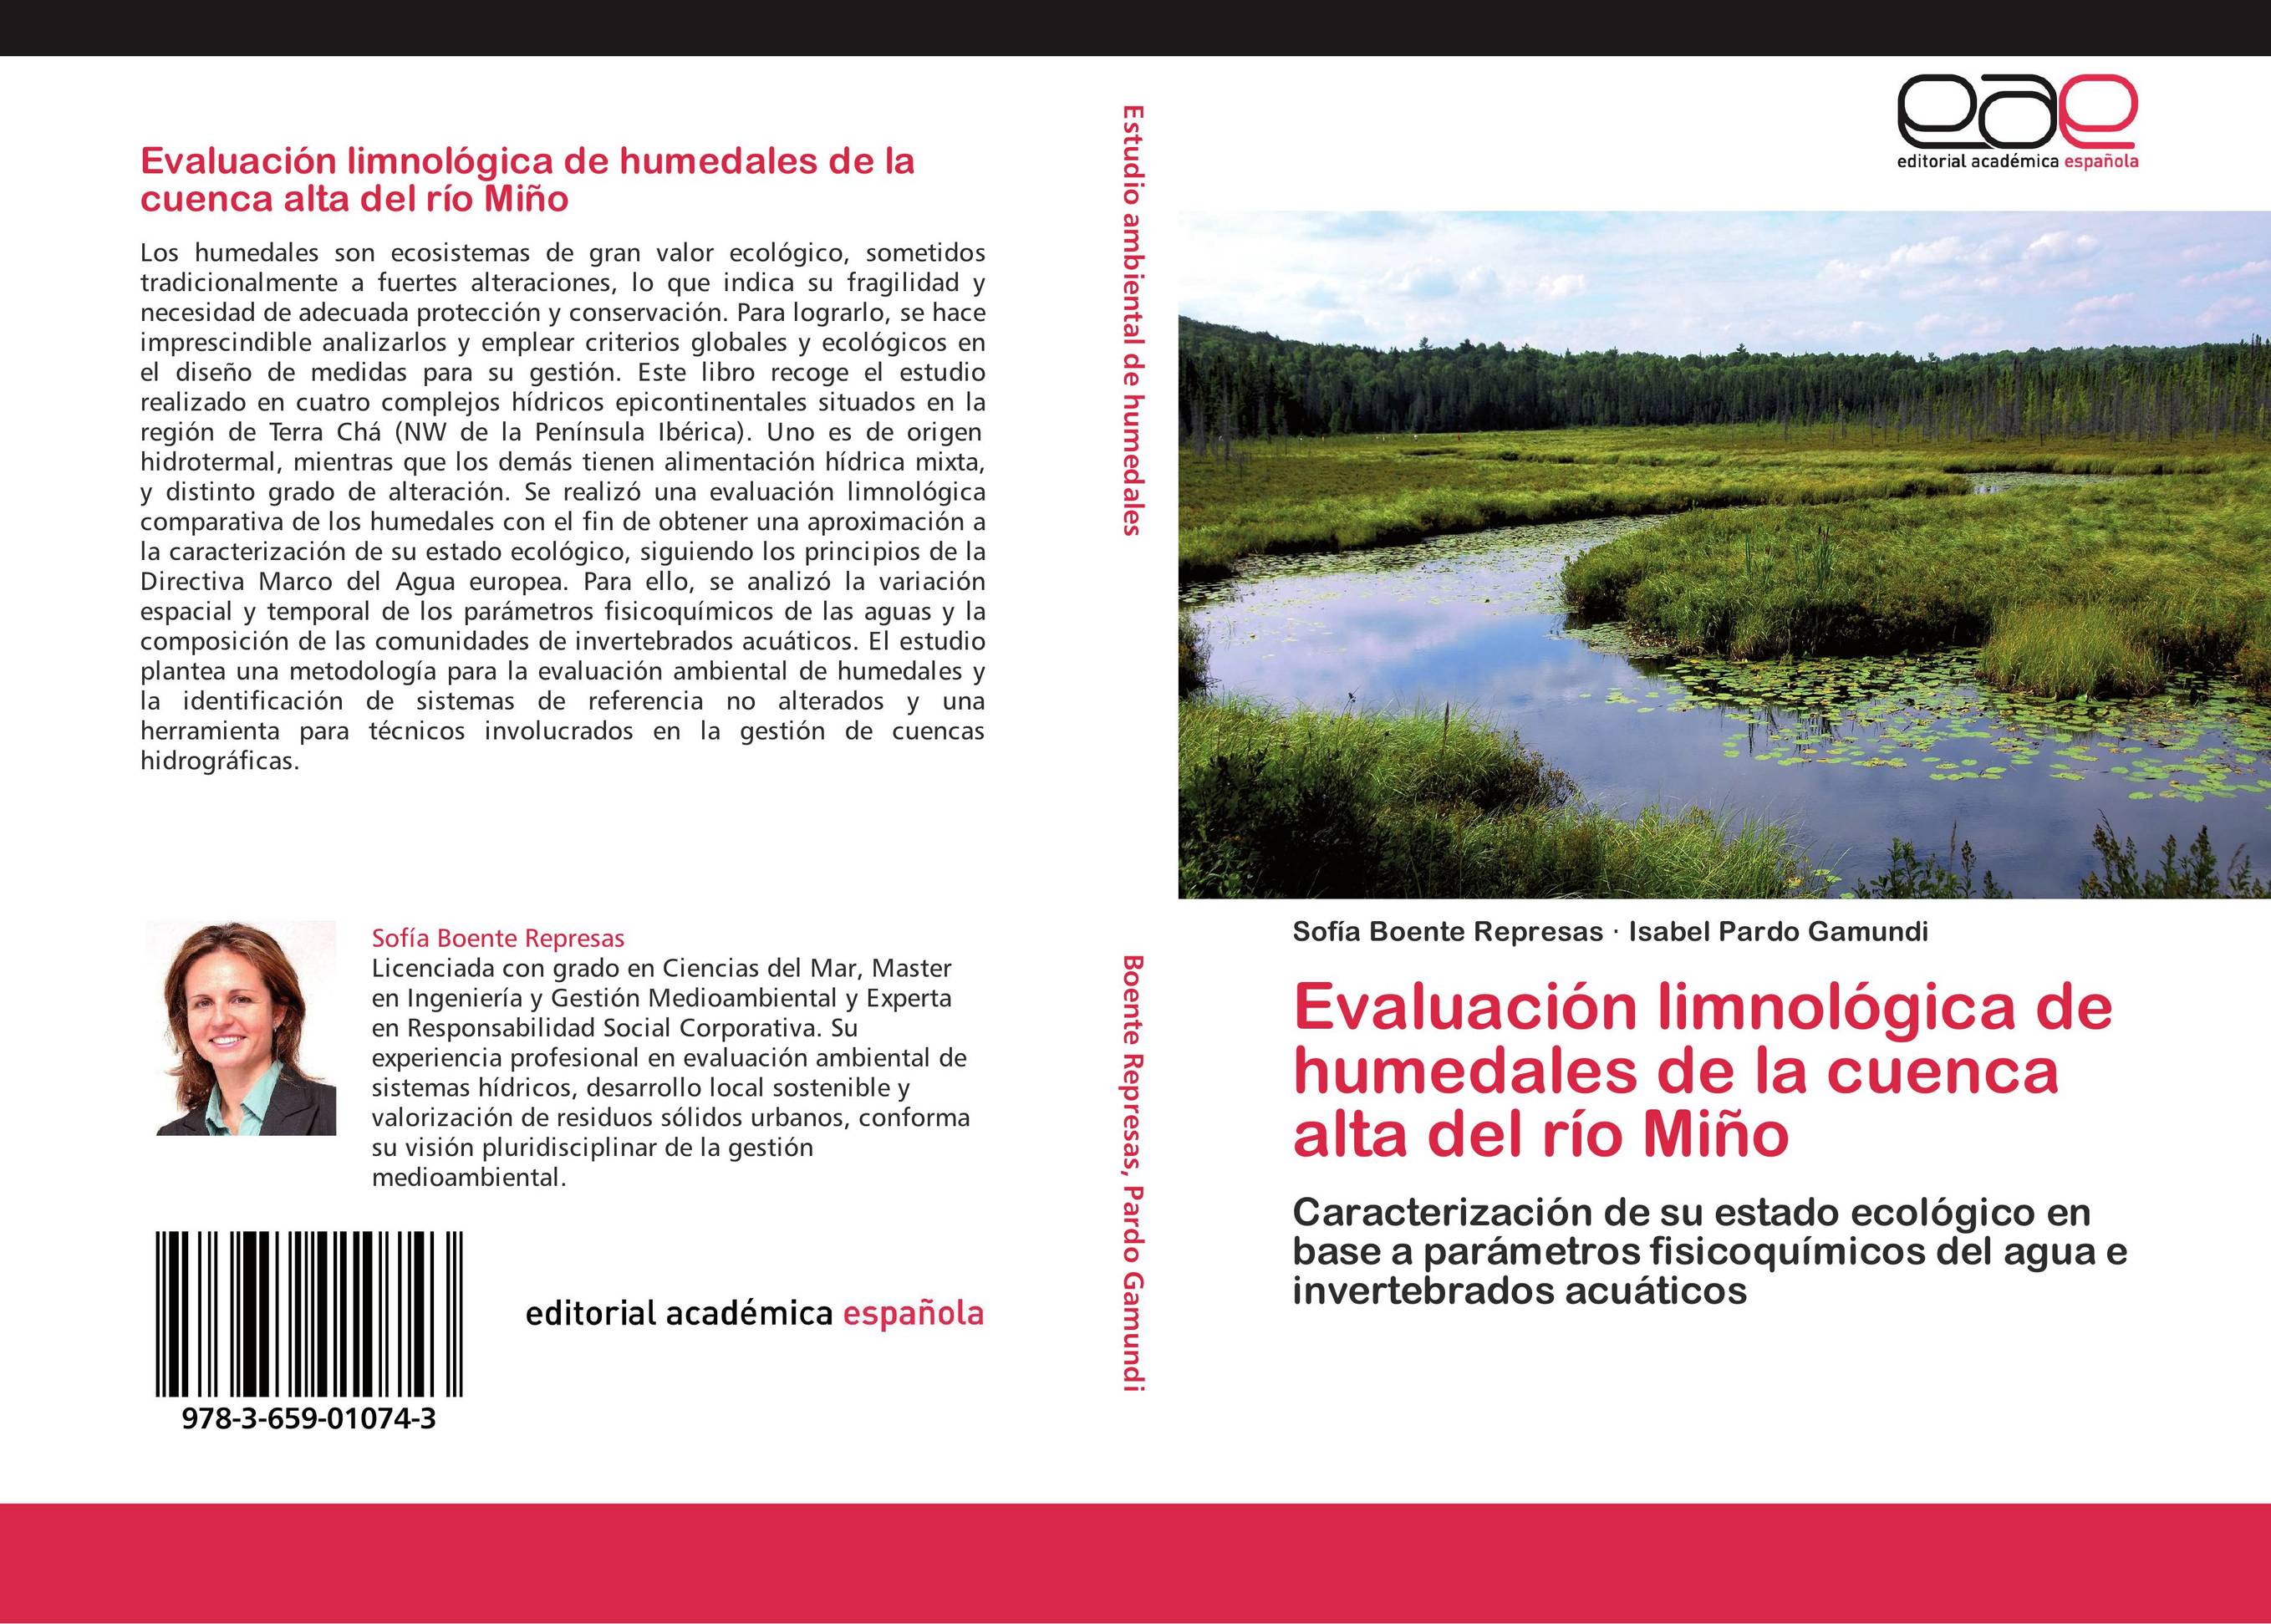 Evaluación limnológica de humedales de la cuenca alta del río Miño